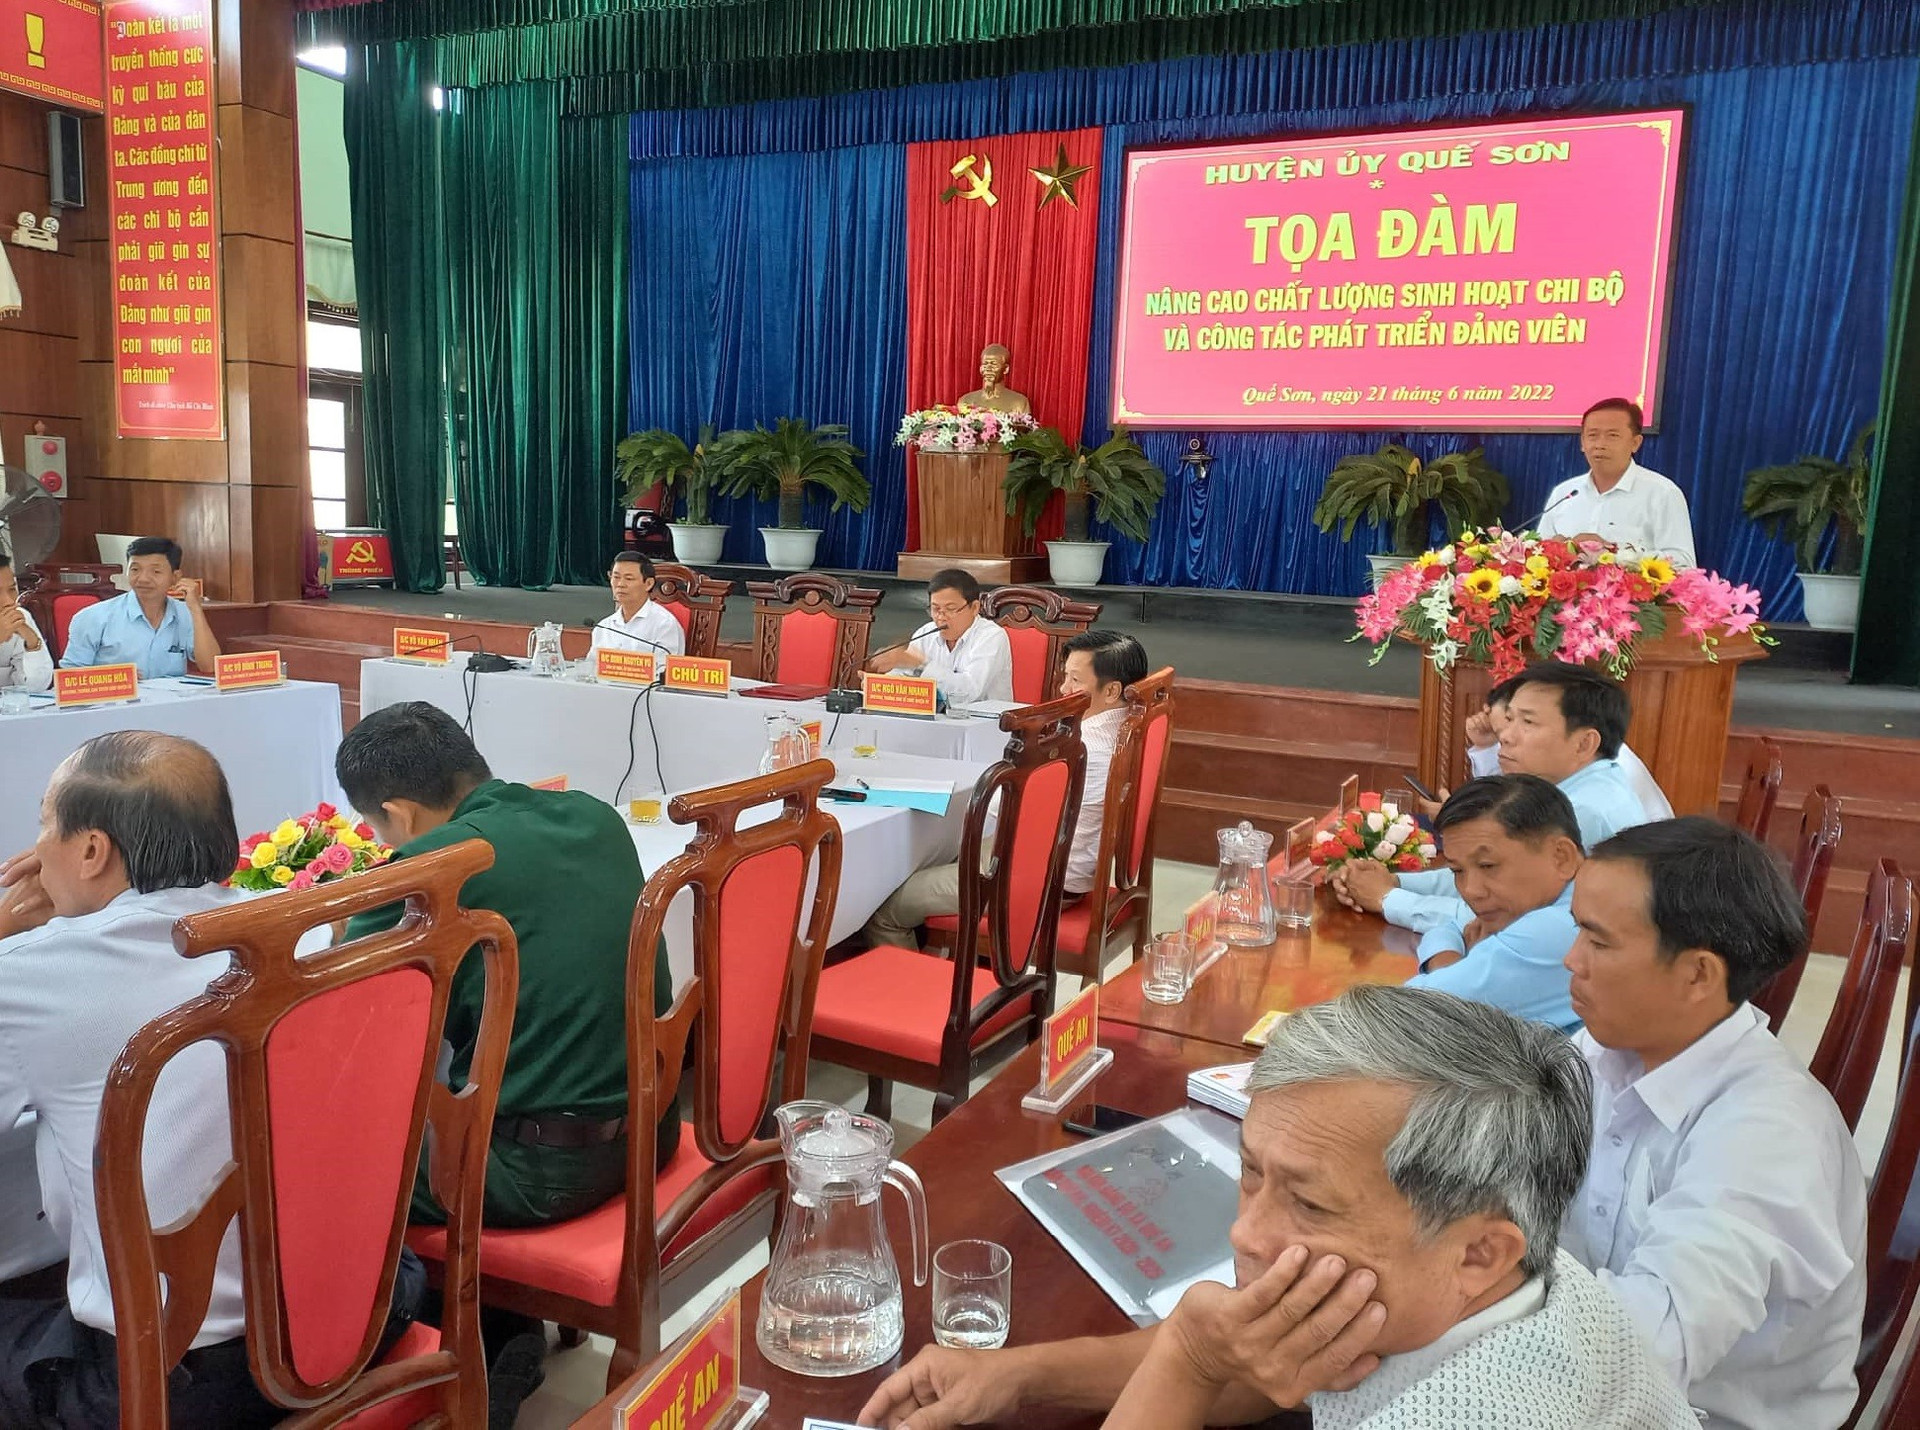 Ông Đinh Nguyên Vũ - Bí thư Huyện ủy Quế Sơn phát biểu chỉ đạo tại buổi tọa đàm. ảnh DT